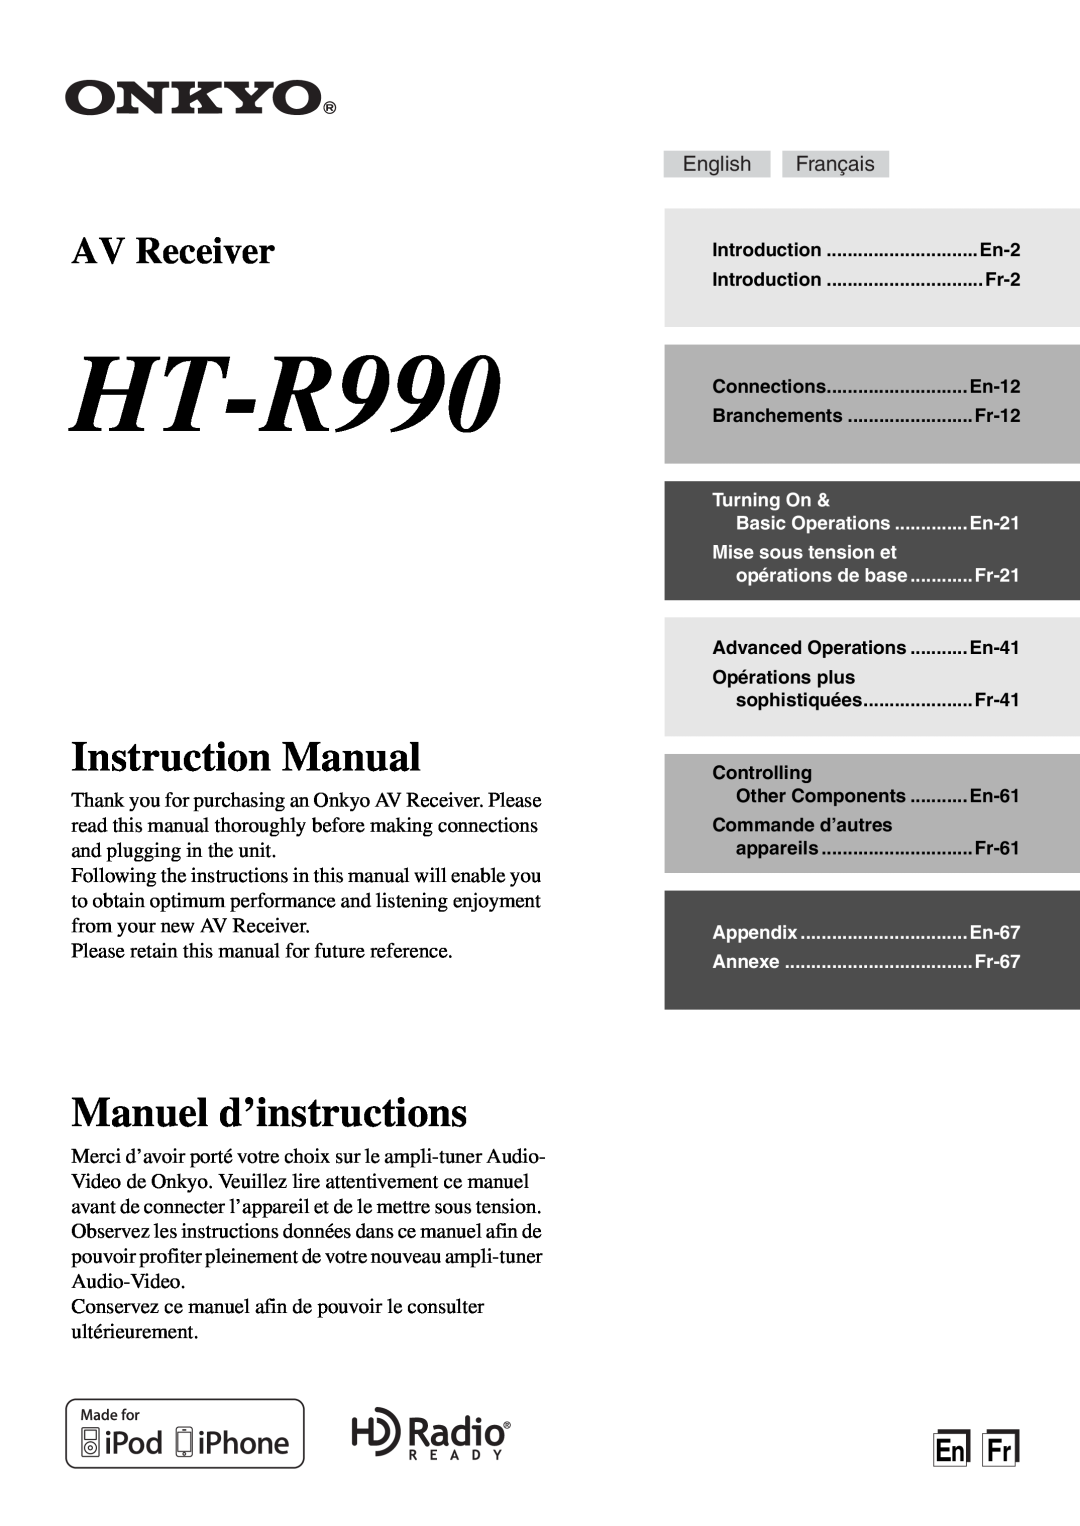 Onkyo HT-R990 instruction manual Instruction Manual, Manuel d’instructions, AV Receiver, EnFr 